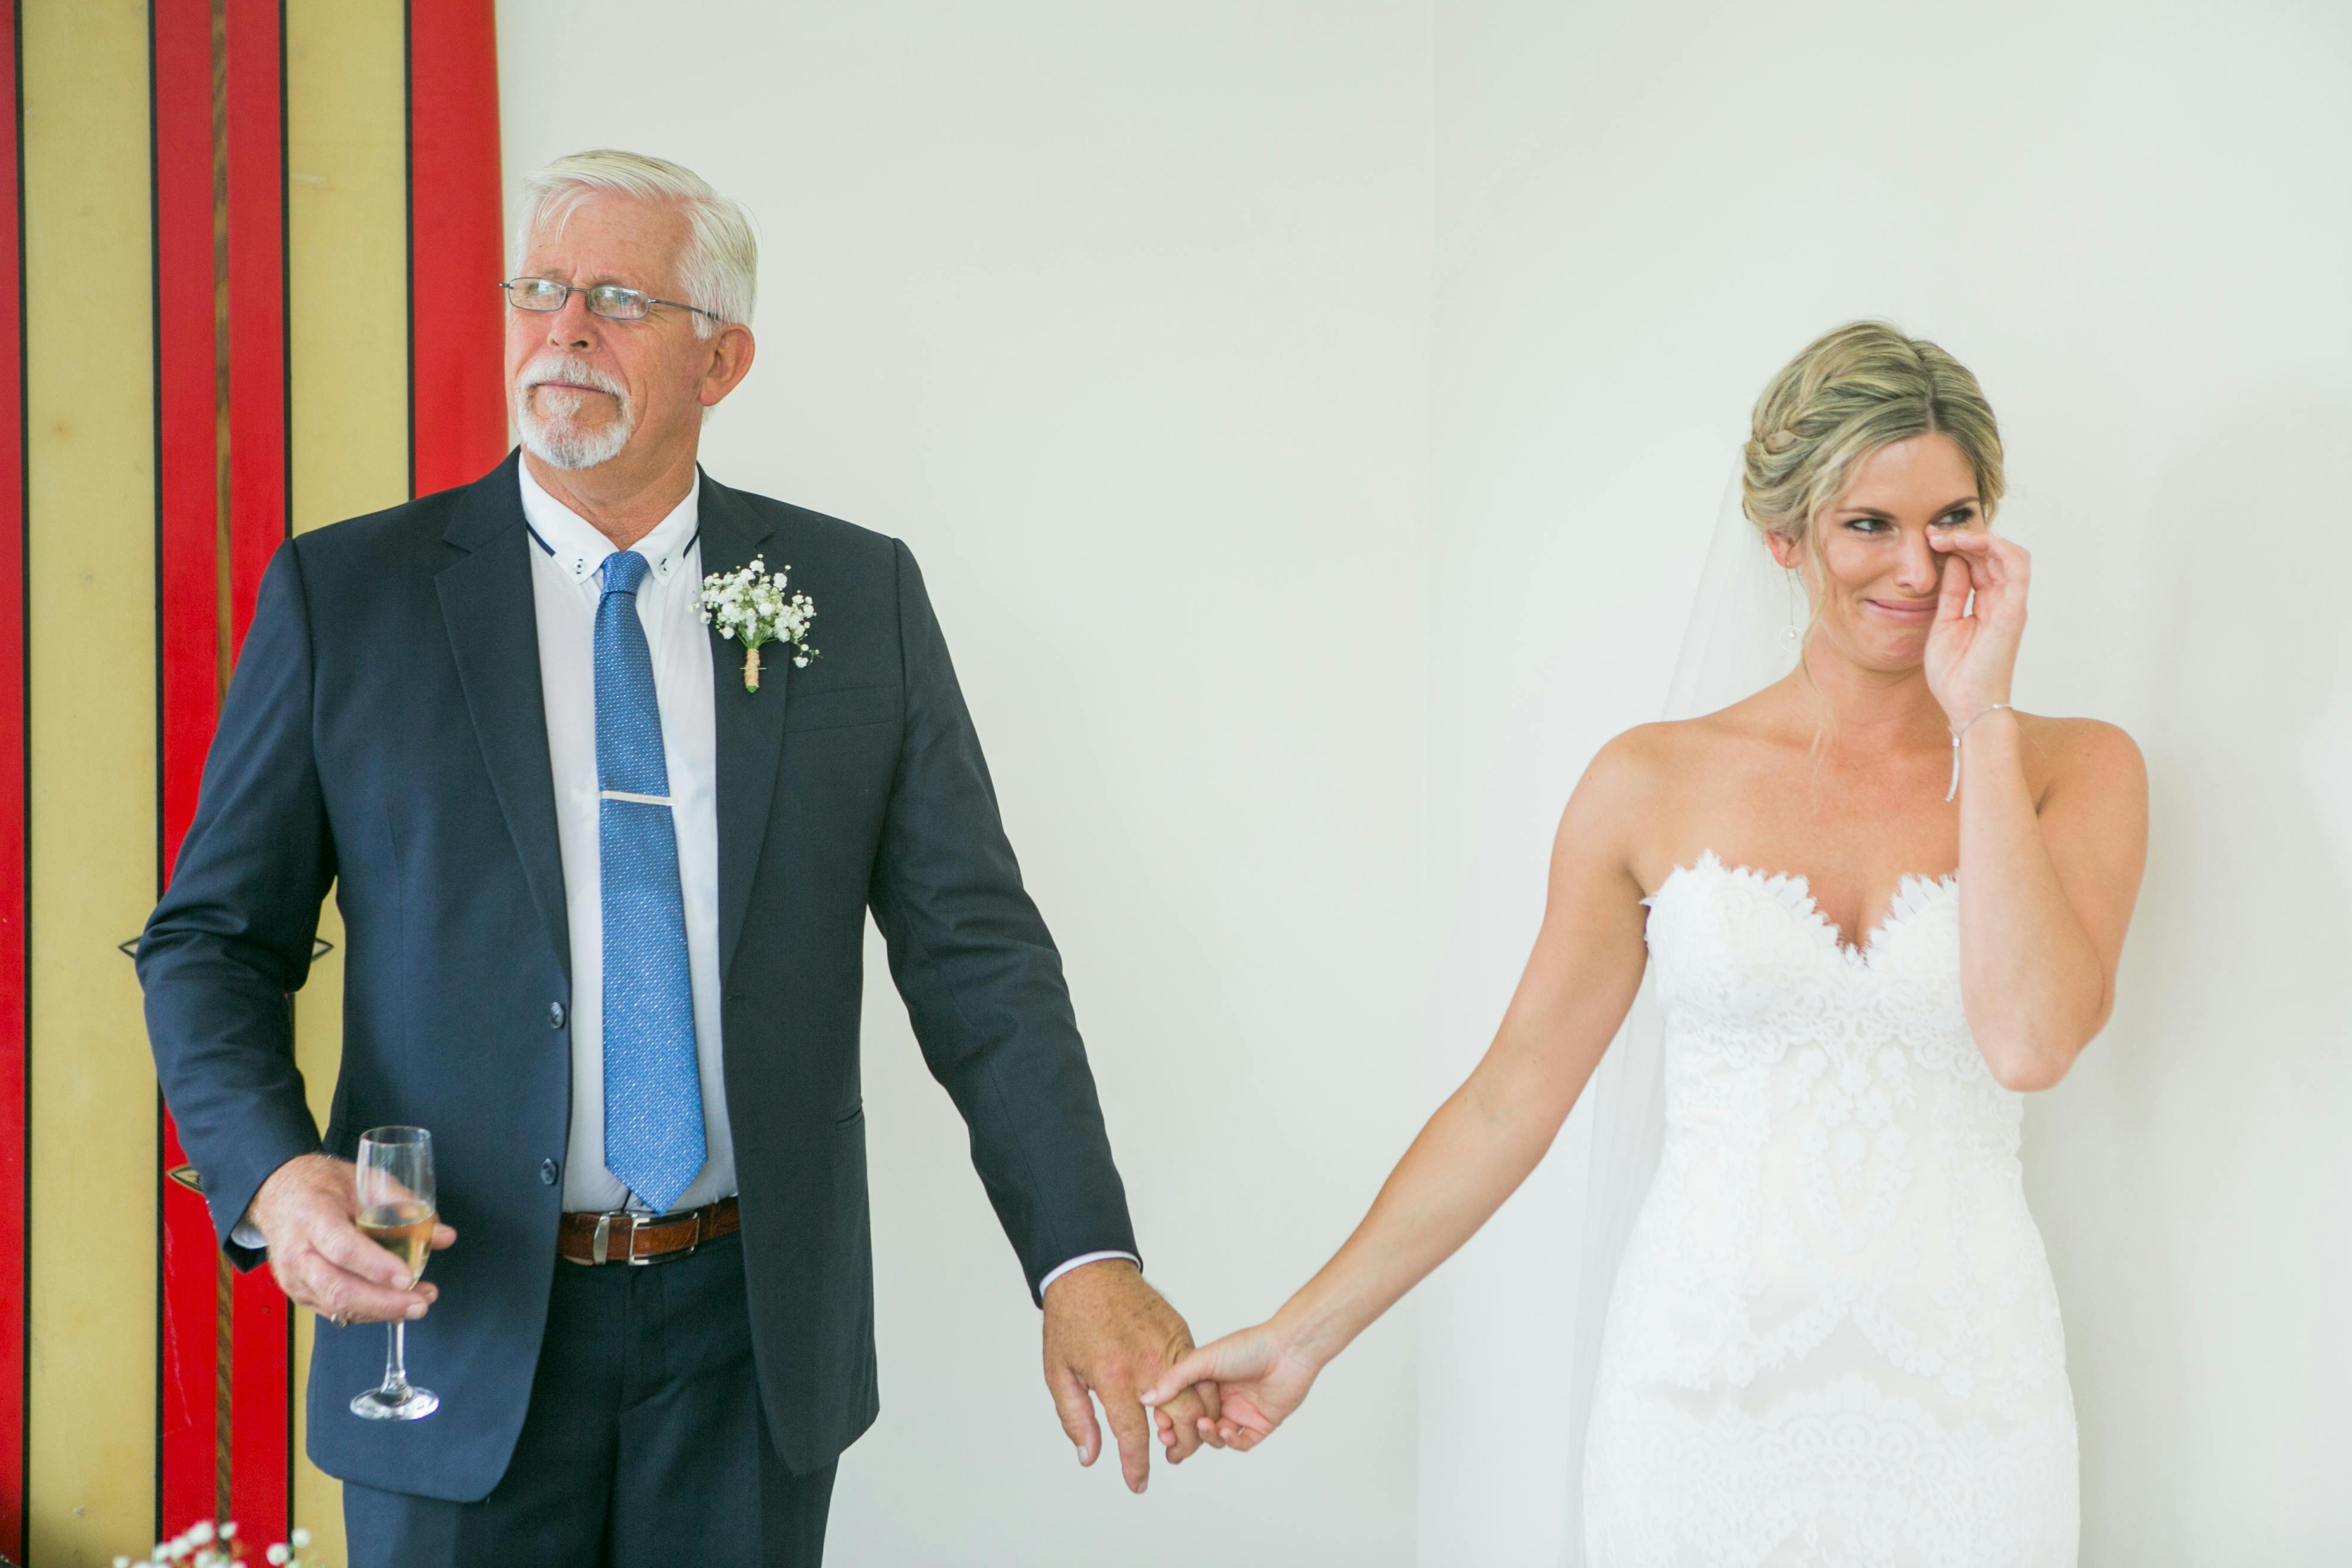 Mariée émue avec son père pendant la célébration du mariage | Source : Pexels